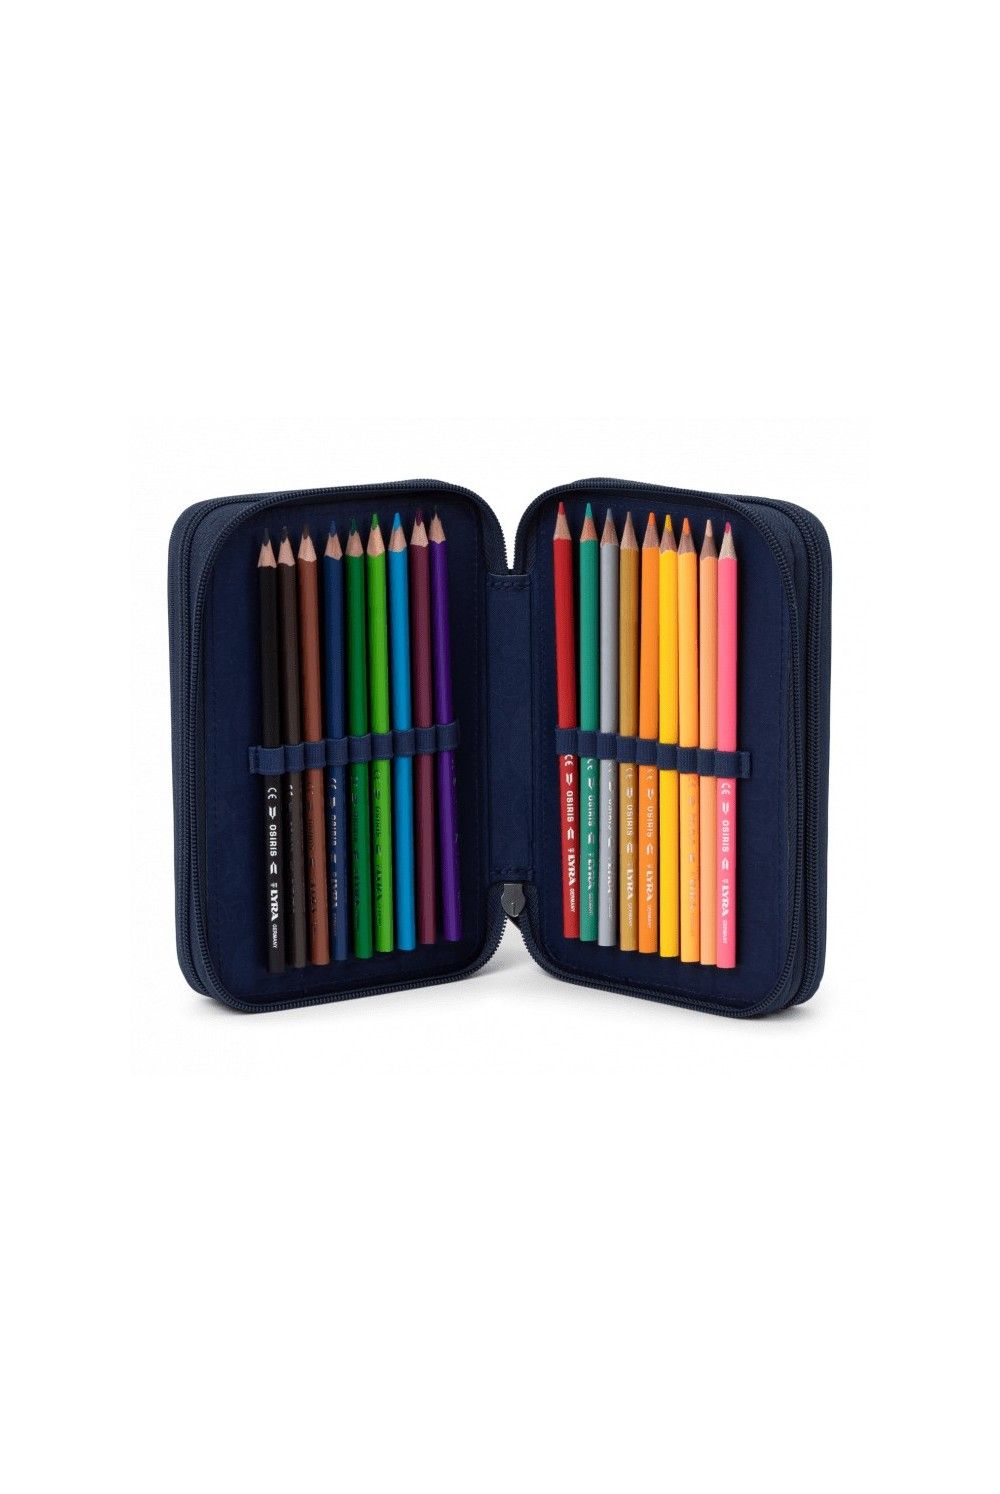 Ergobag maxi pencil case FeuerspeiBär